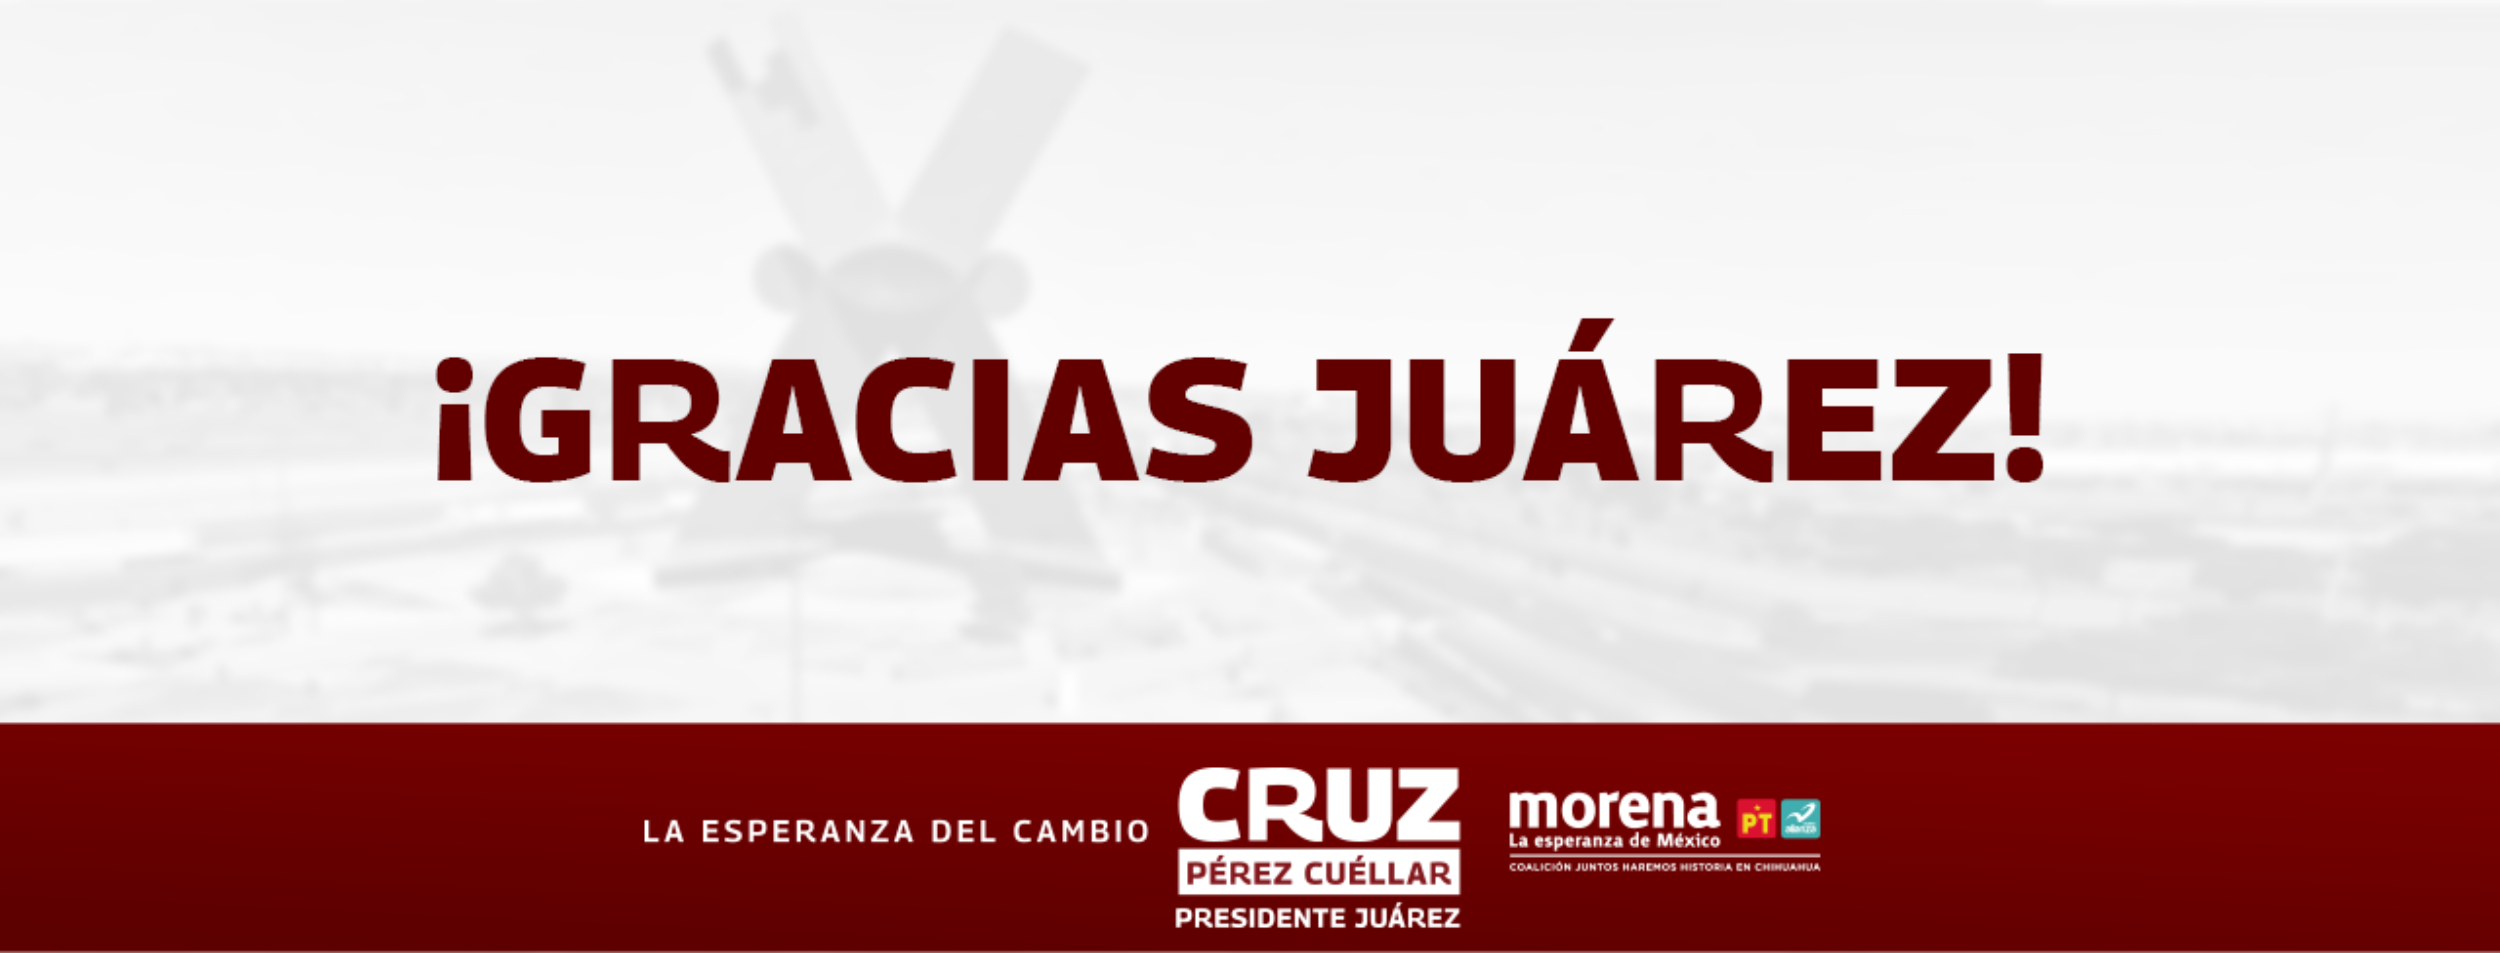 Cruz Pérez Cuéllar